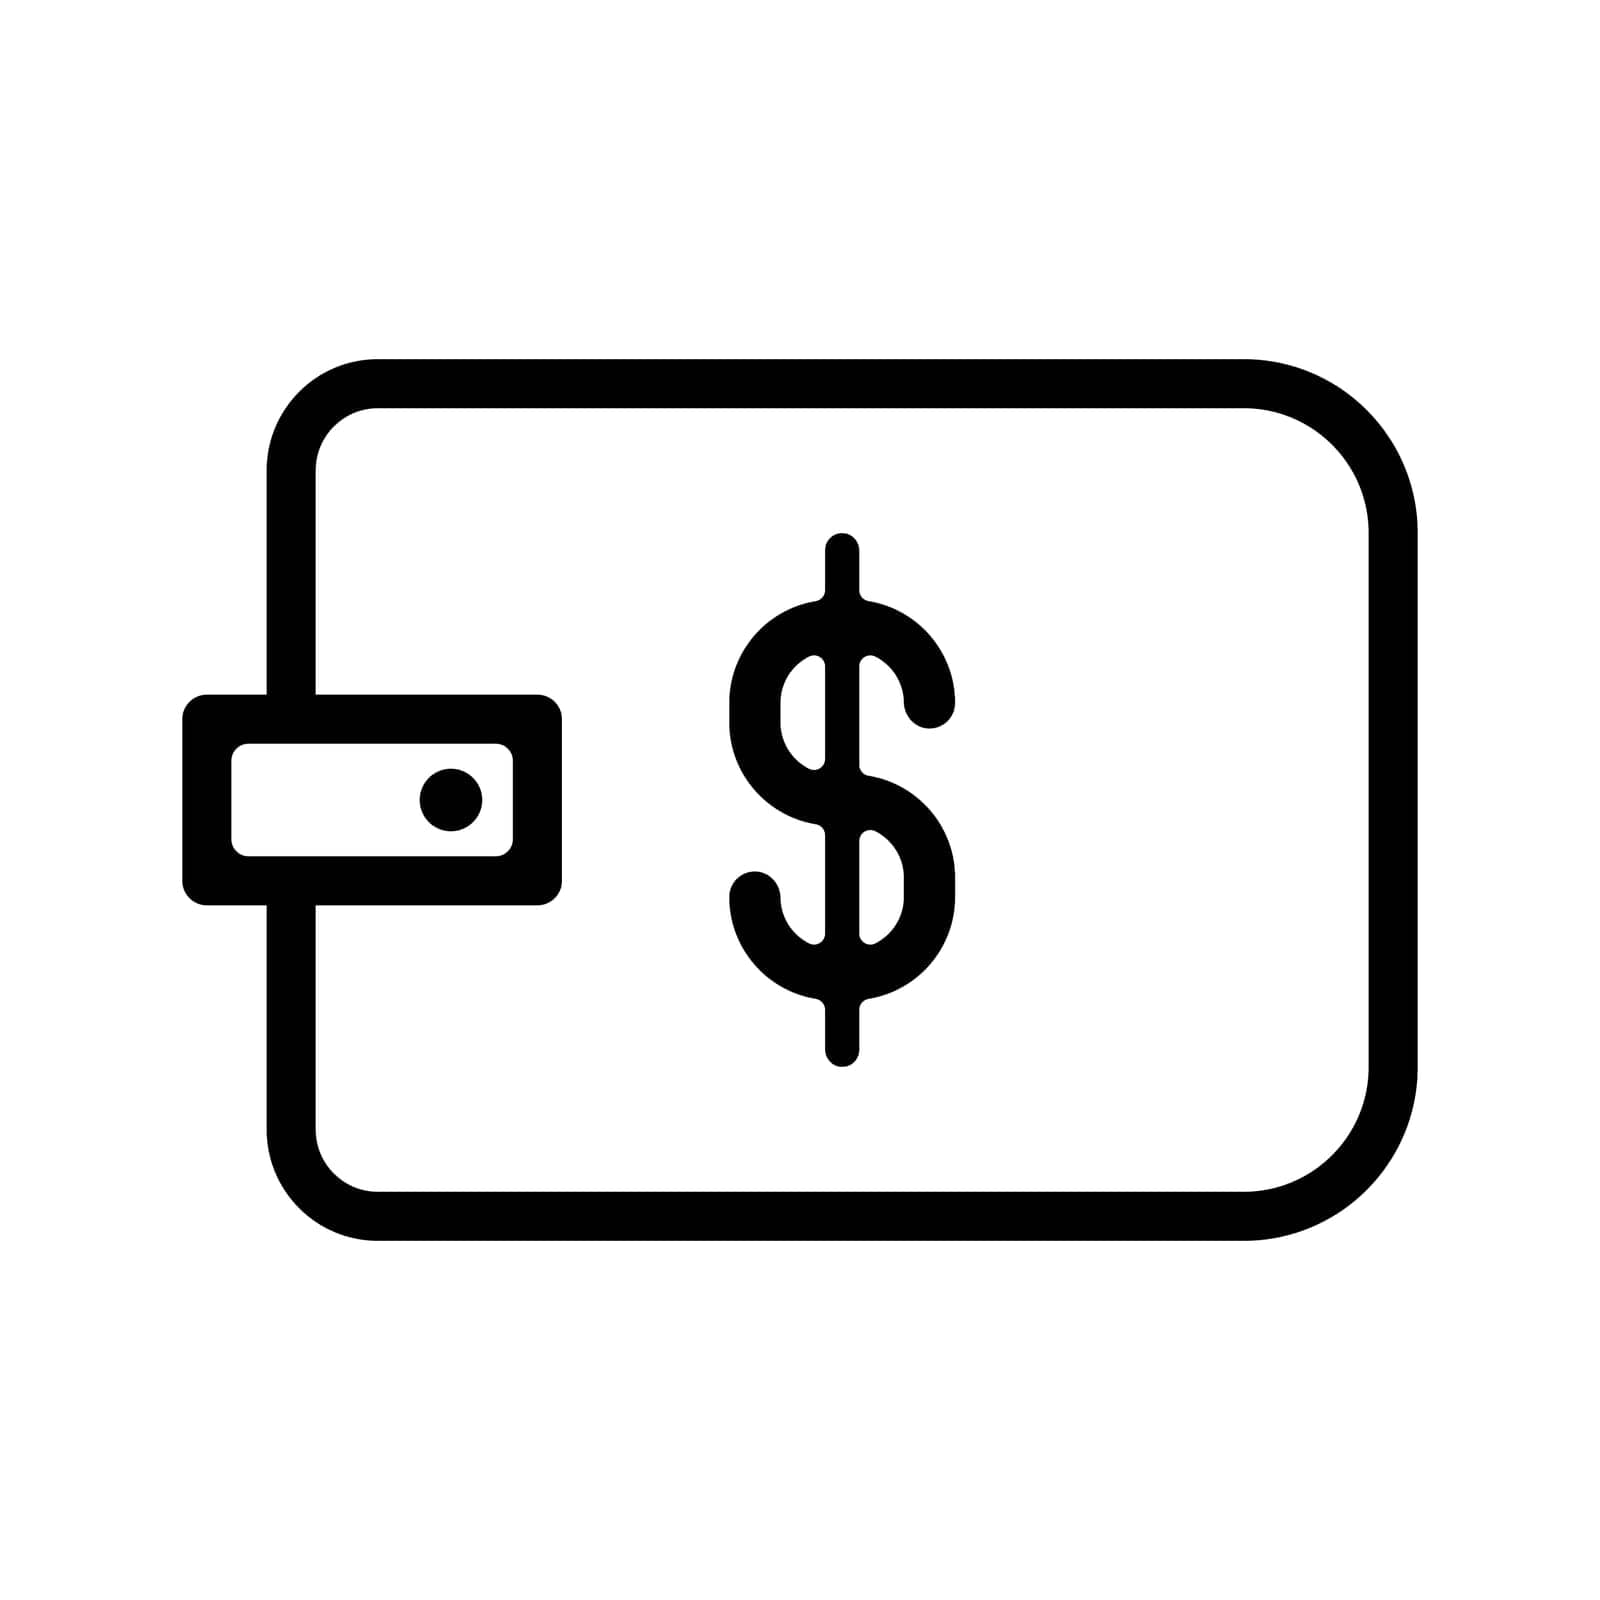 Wallet vector. Saving money concept icon. Dollar icon in wallet vector. Wallet simple icon. by Moreidea